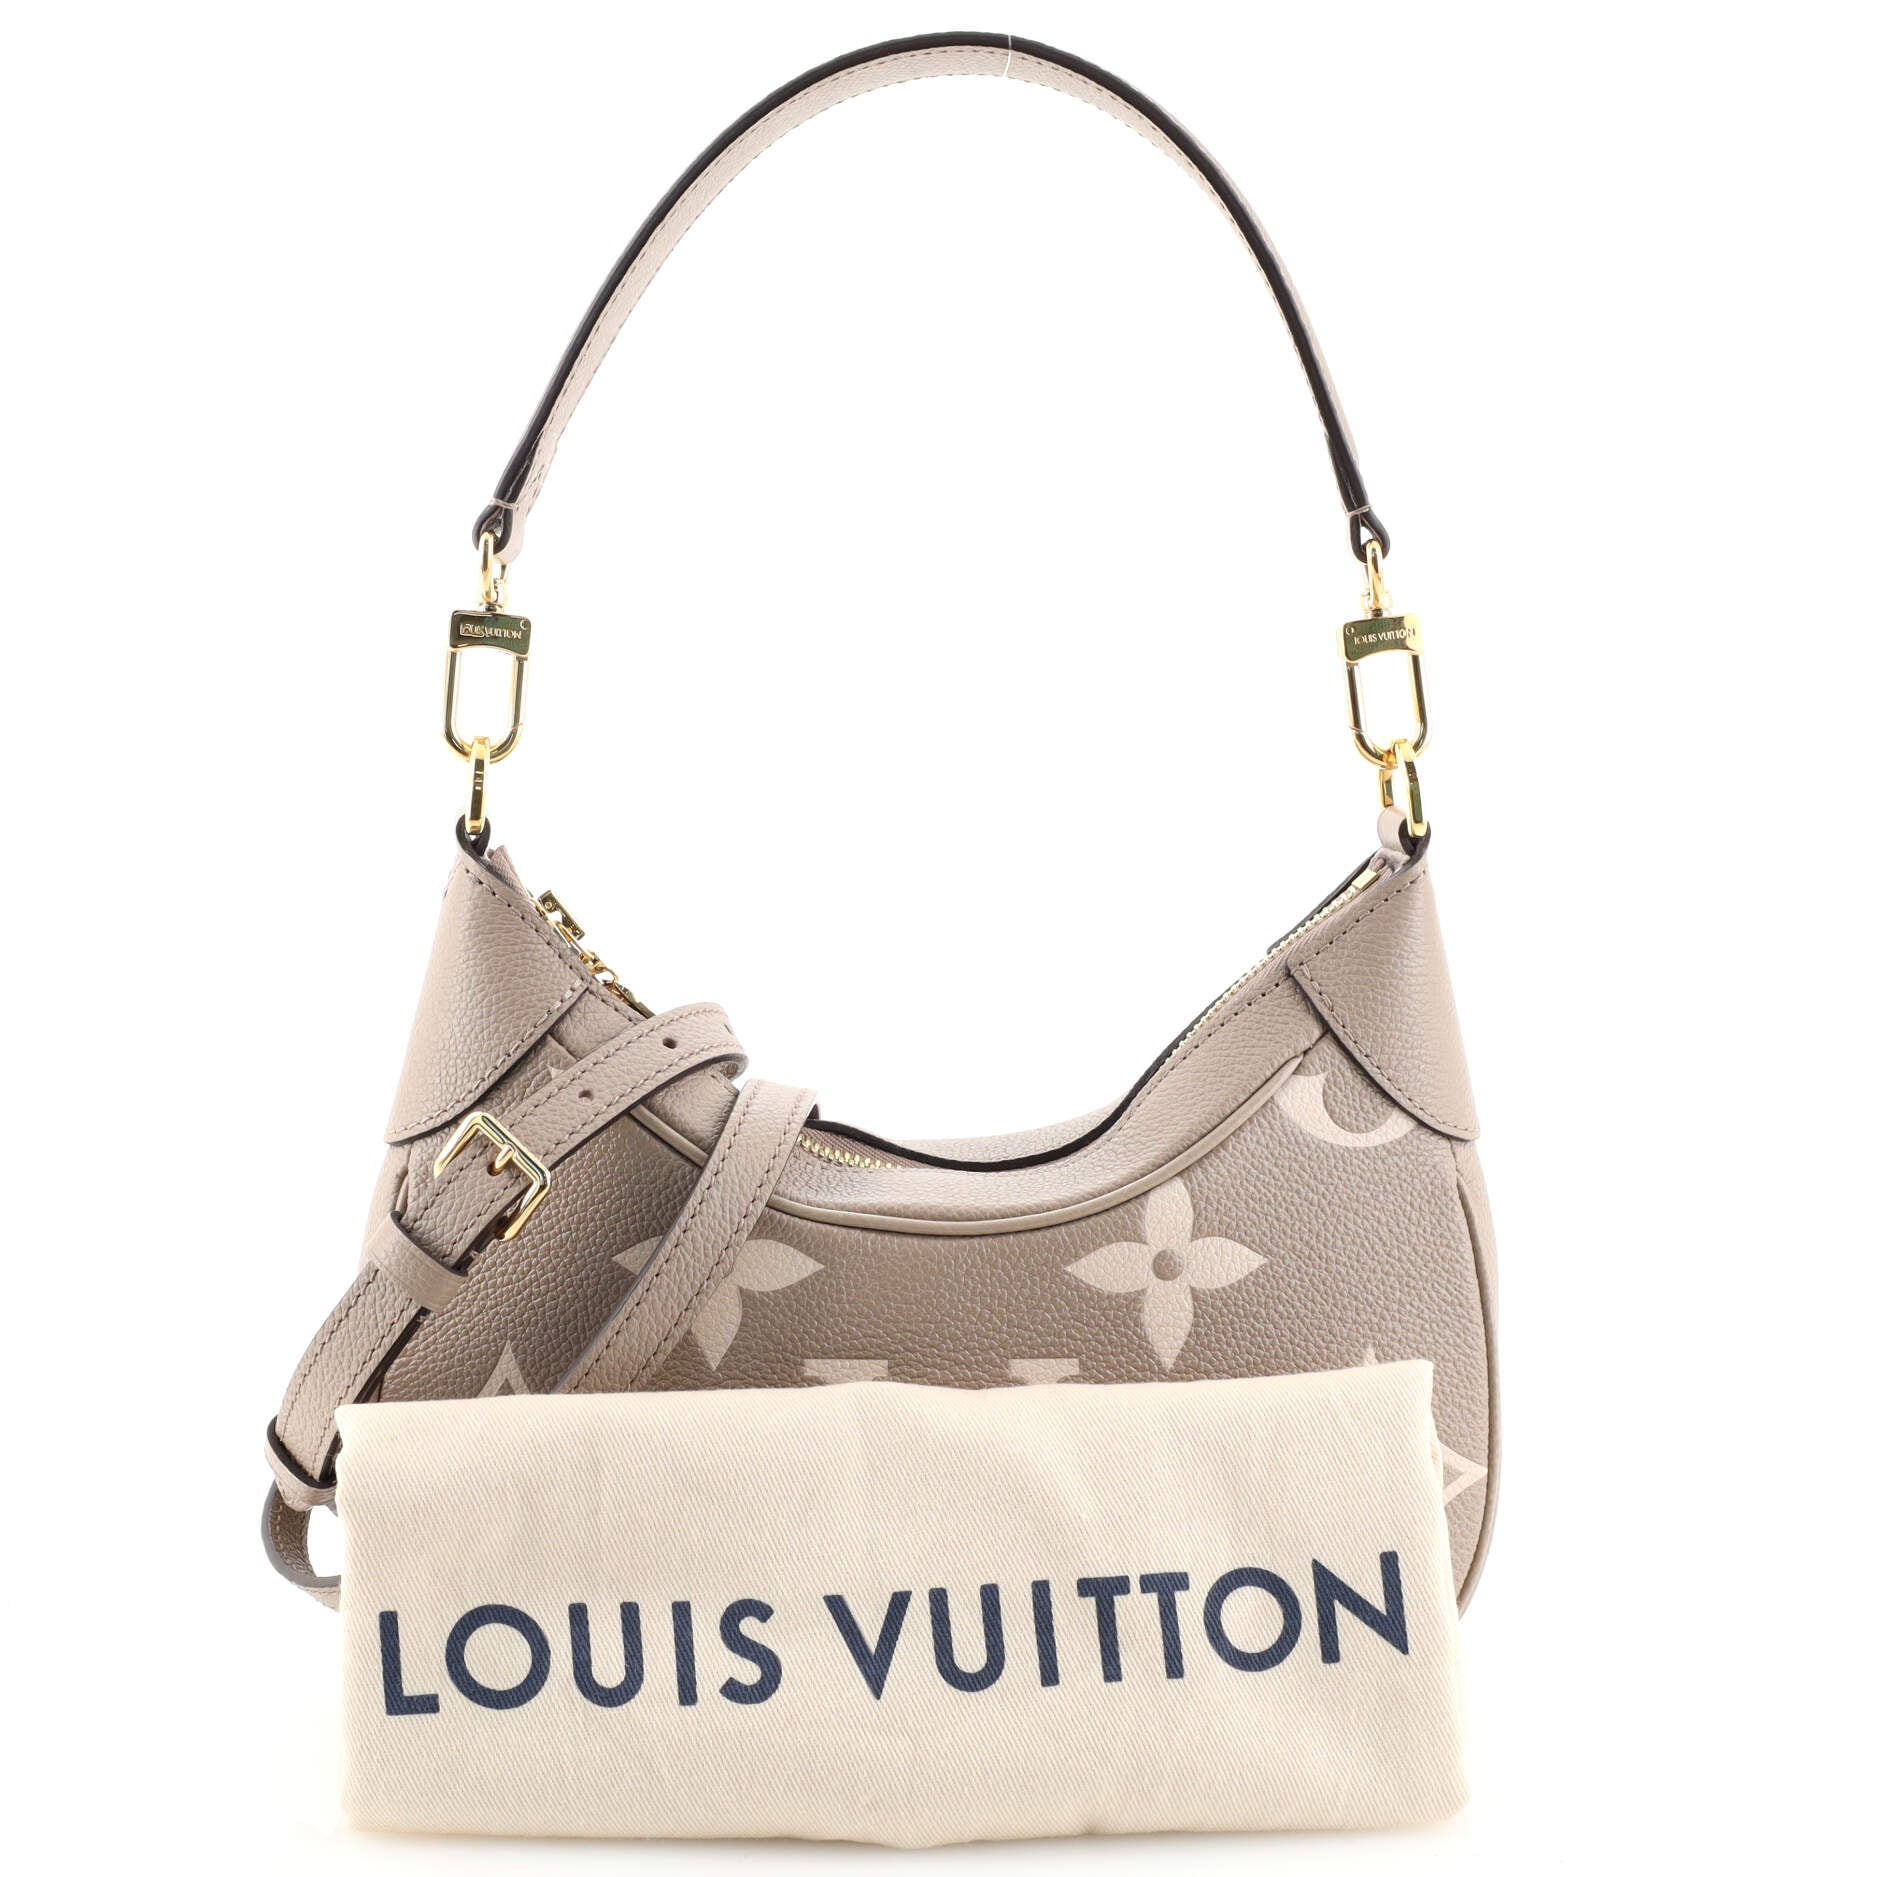 Louis Vuitton Bagatelle Bag Bicolor Monogram Empreinte Leather